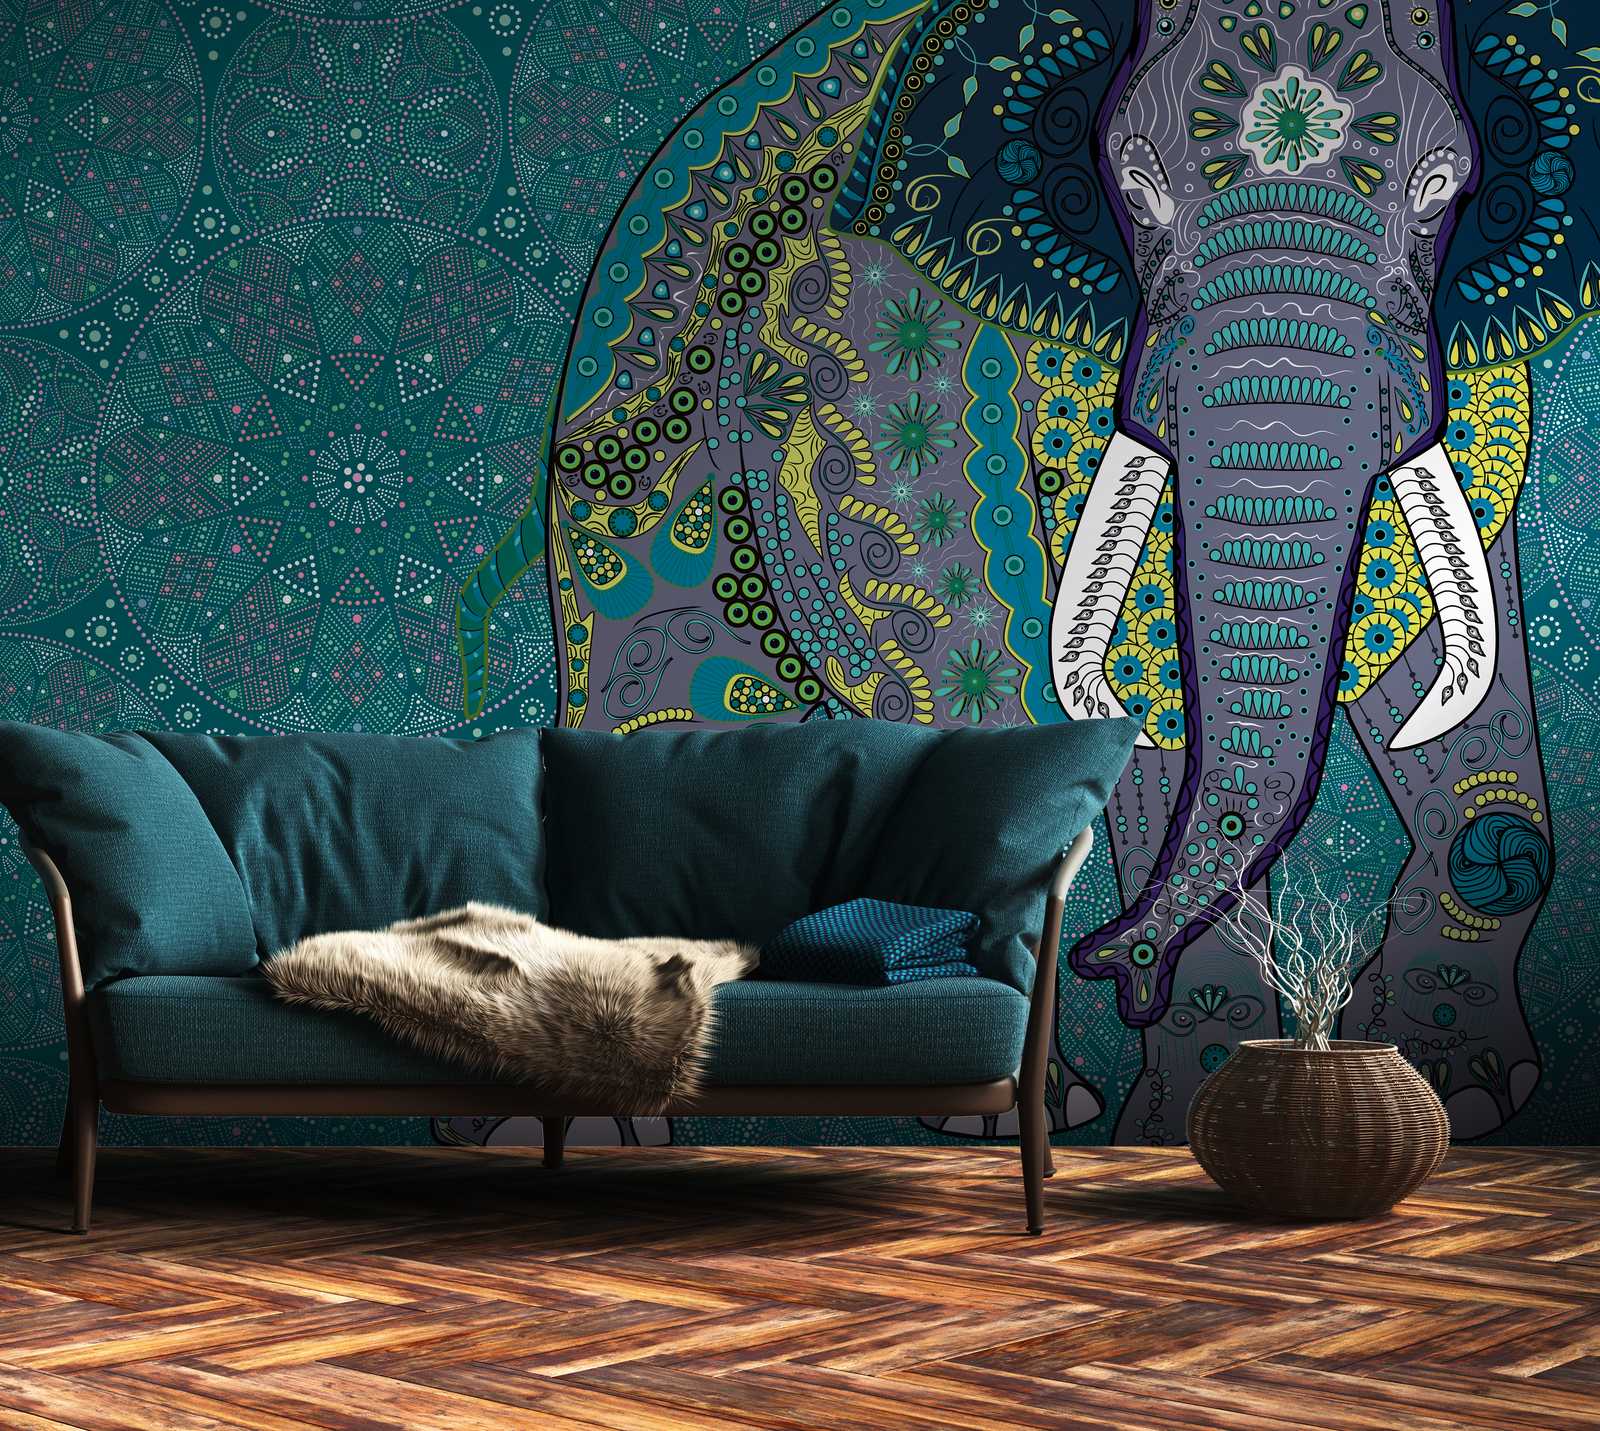             Nouveauté papier peint | Papier peint éléphant motif mandala dans le style indien
        